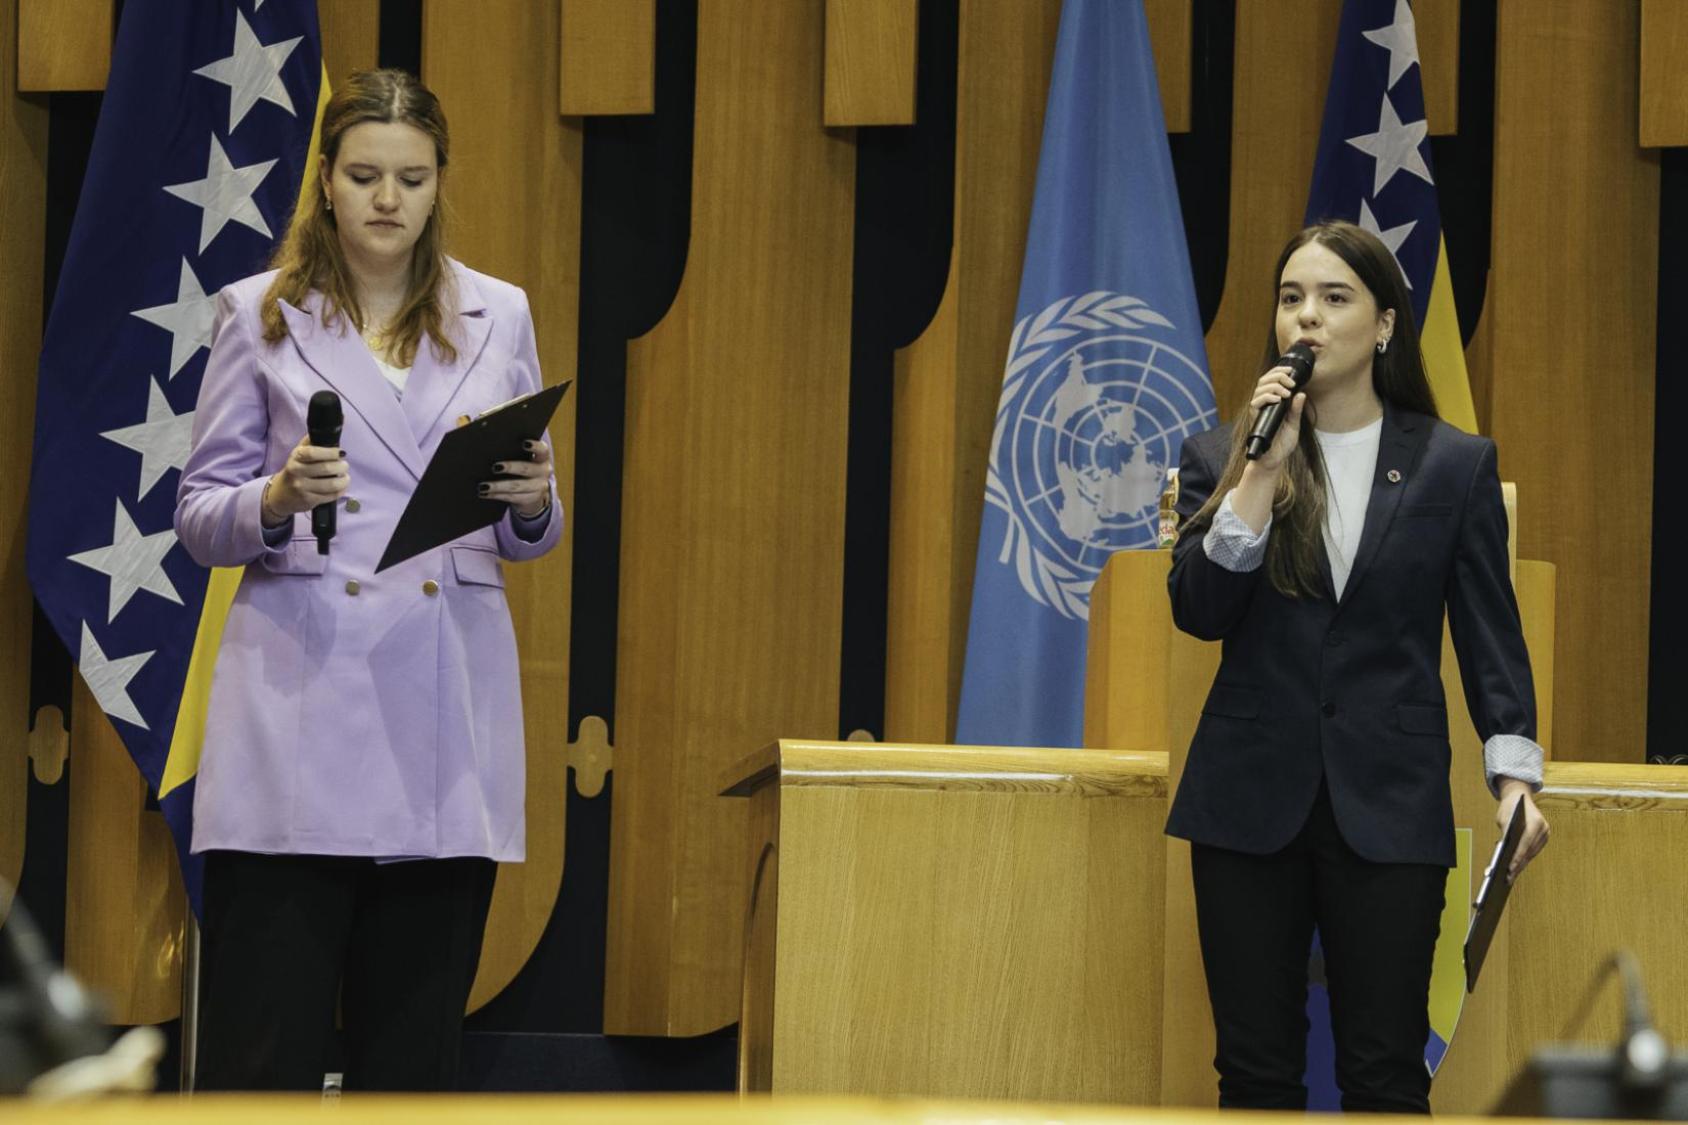 Dos representantes de la juventud de Bosnia y Herzegovina en la COP26, Armela Mehdin y Anastasija Djordja Bosancic, intervienen en la ceremonia.